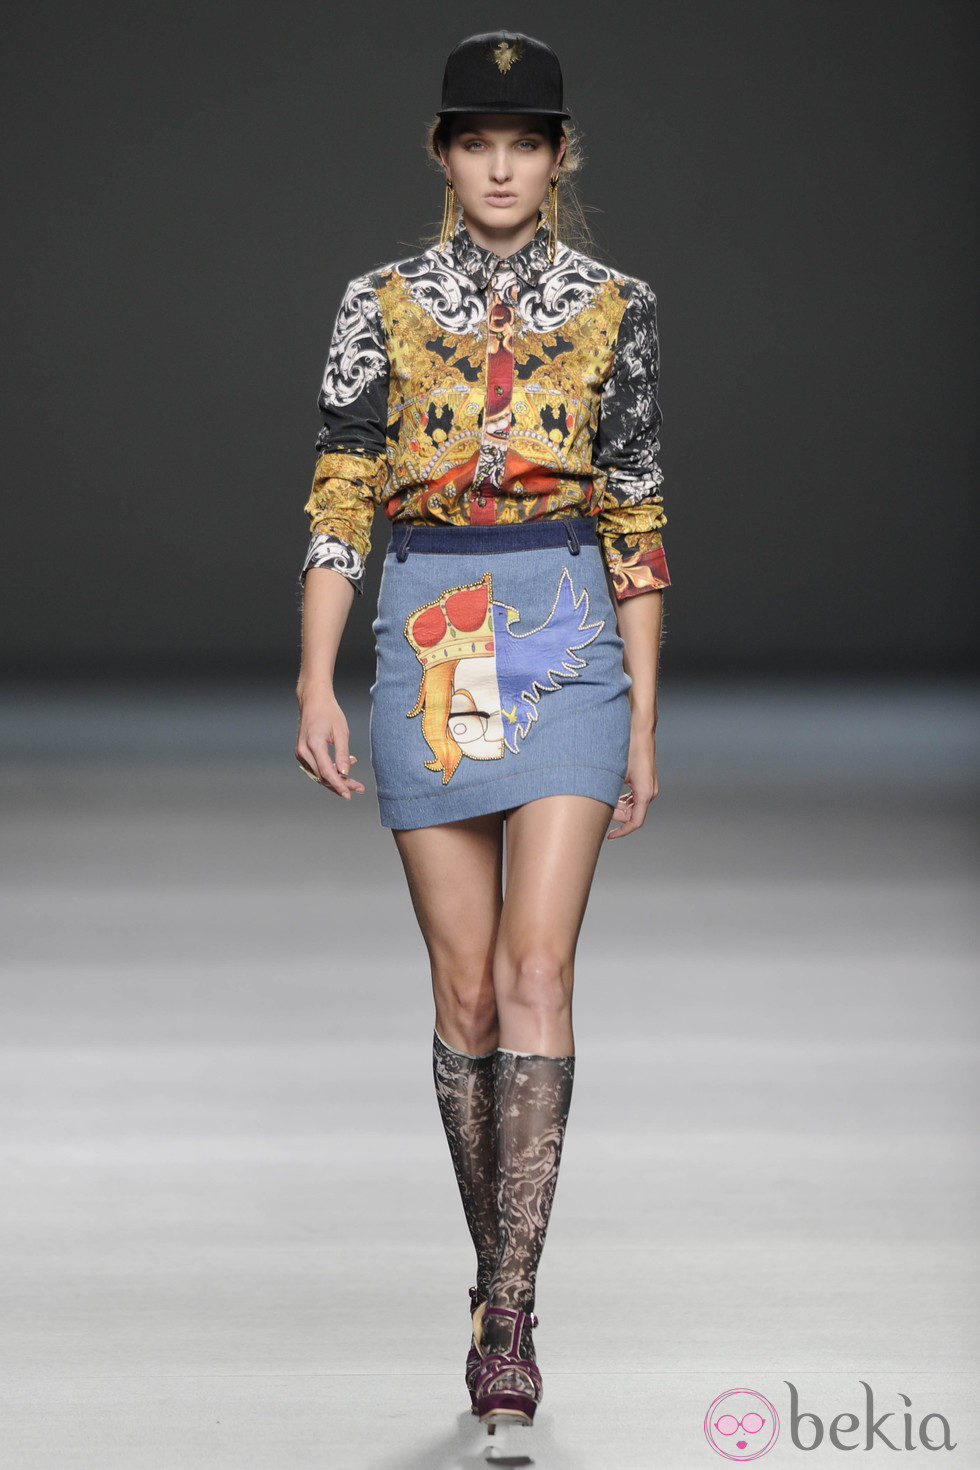 Minifalda denim, camisa estampada y gorra de la colección primavera/verano 2013 de Arnau Bosch